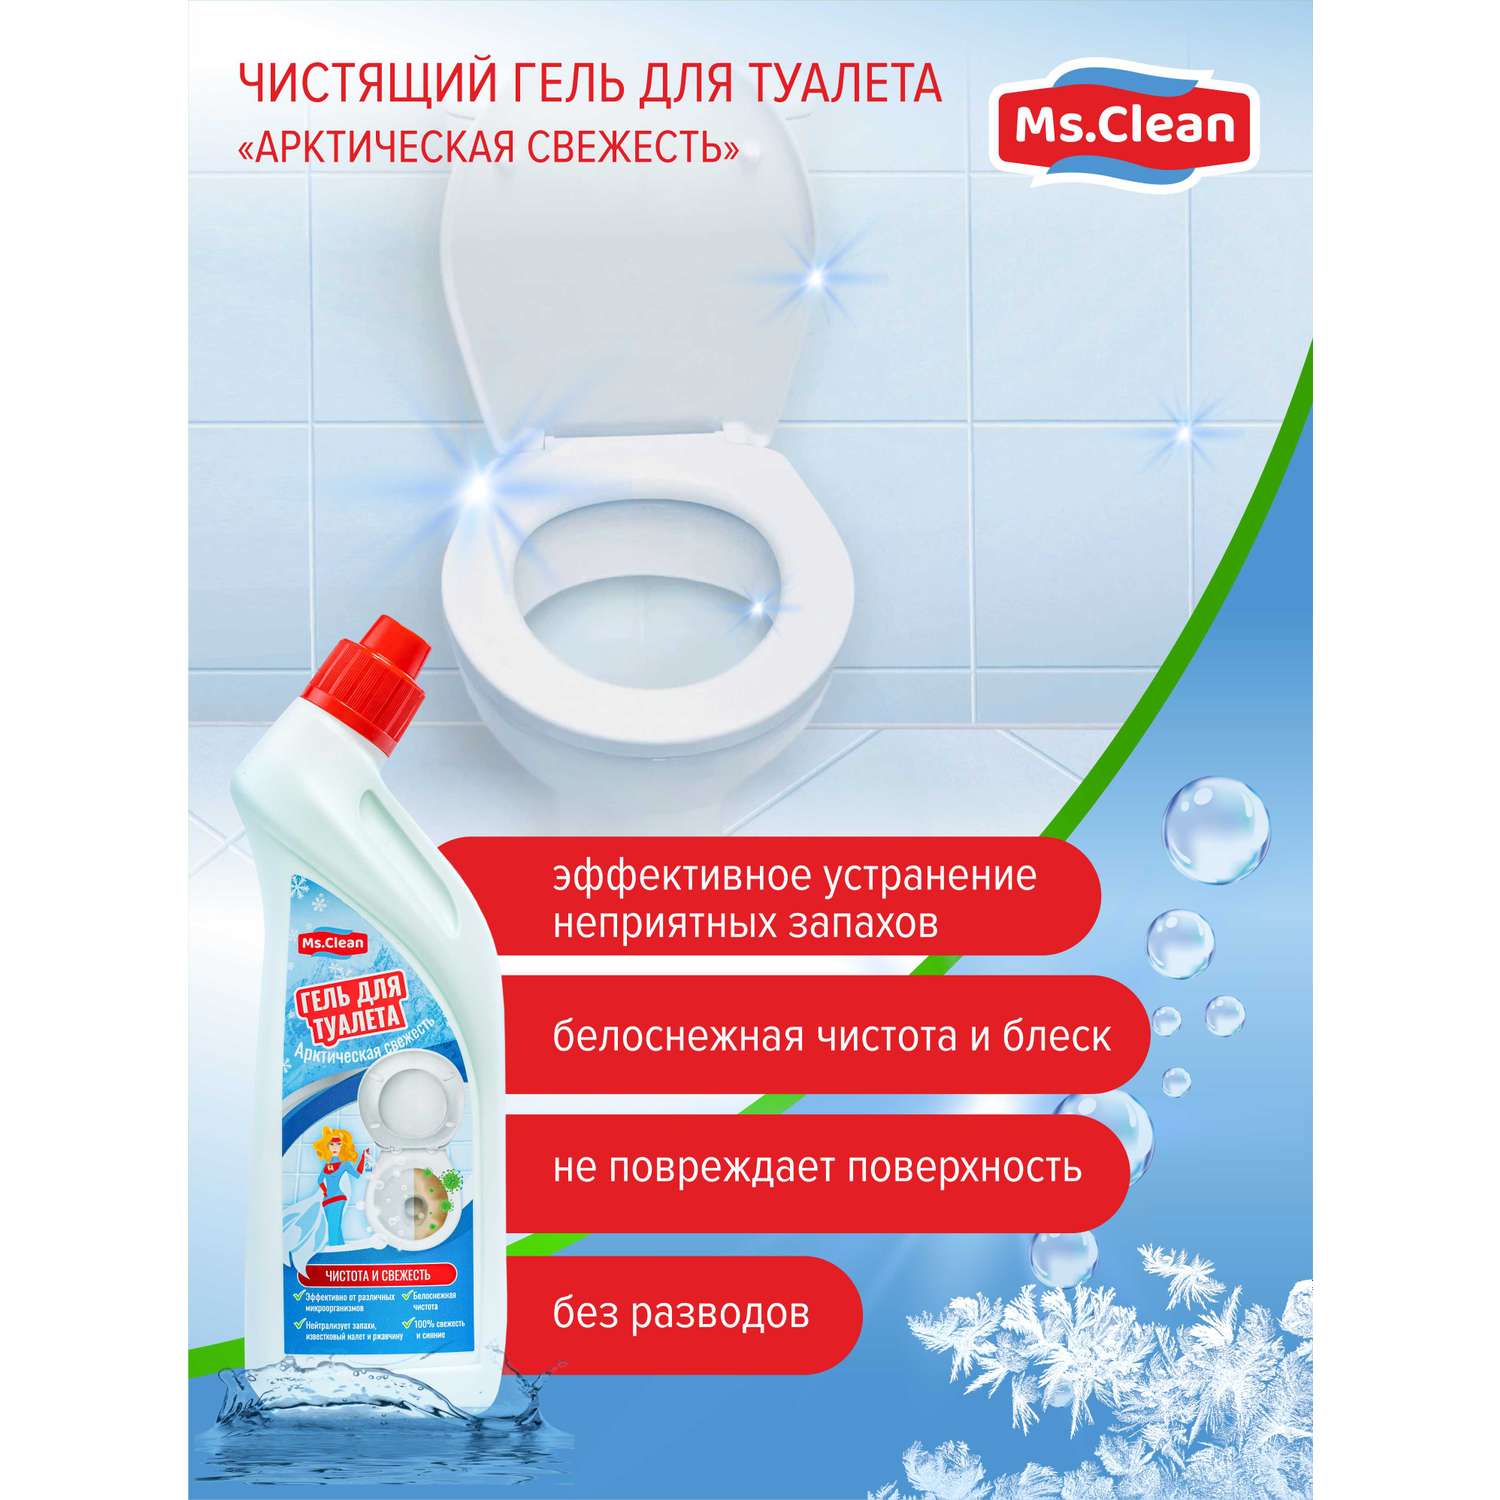 Чистящий гель для туалета Ms.Clean Арктическая свежесть 500 мл - фото 4